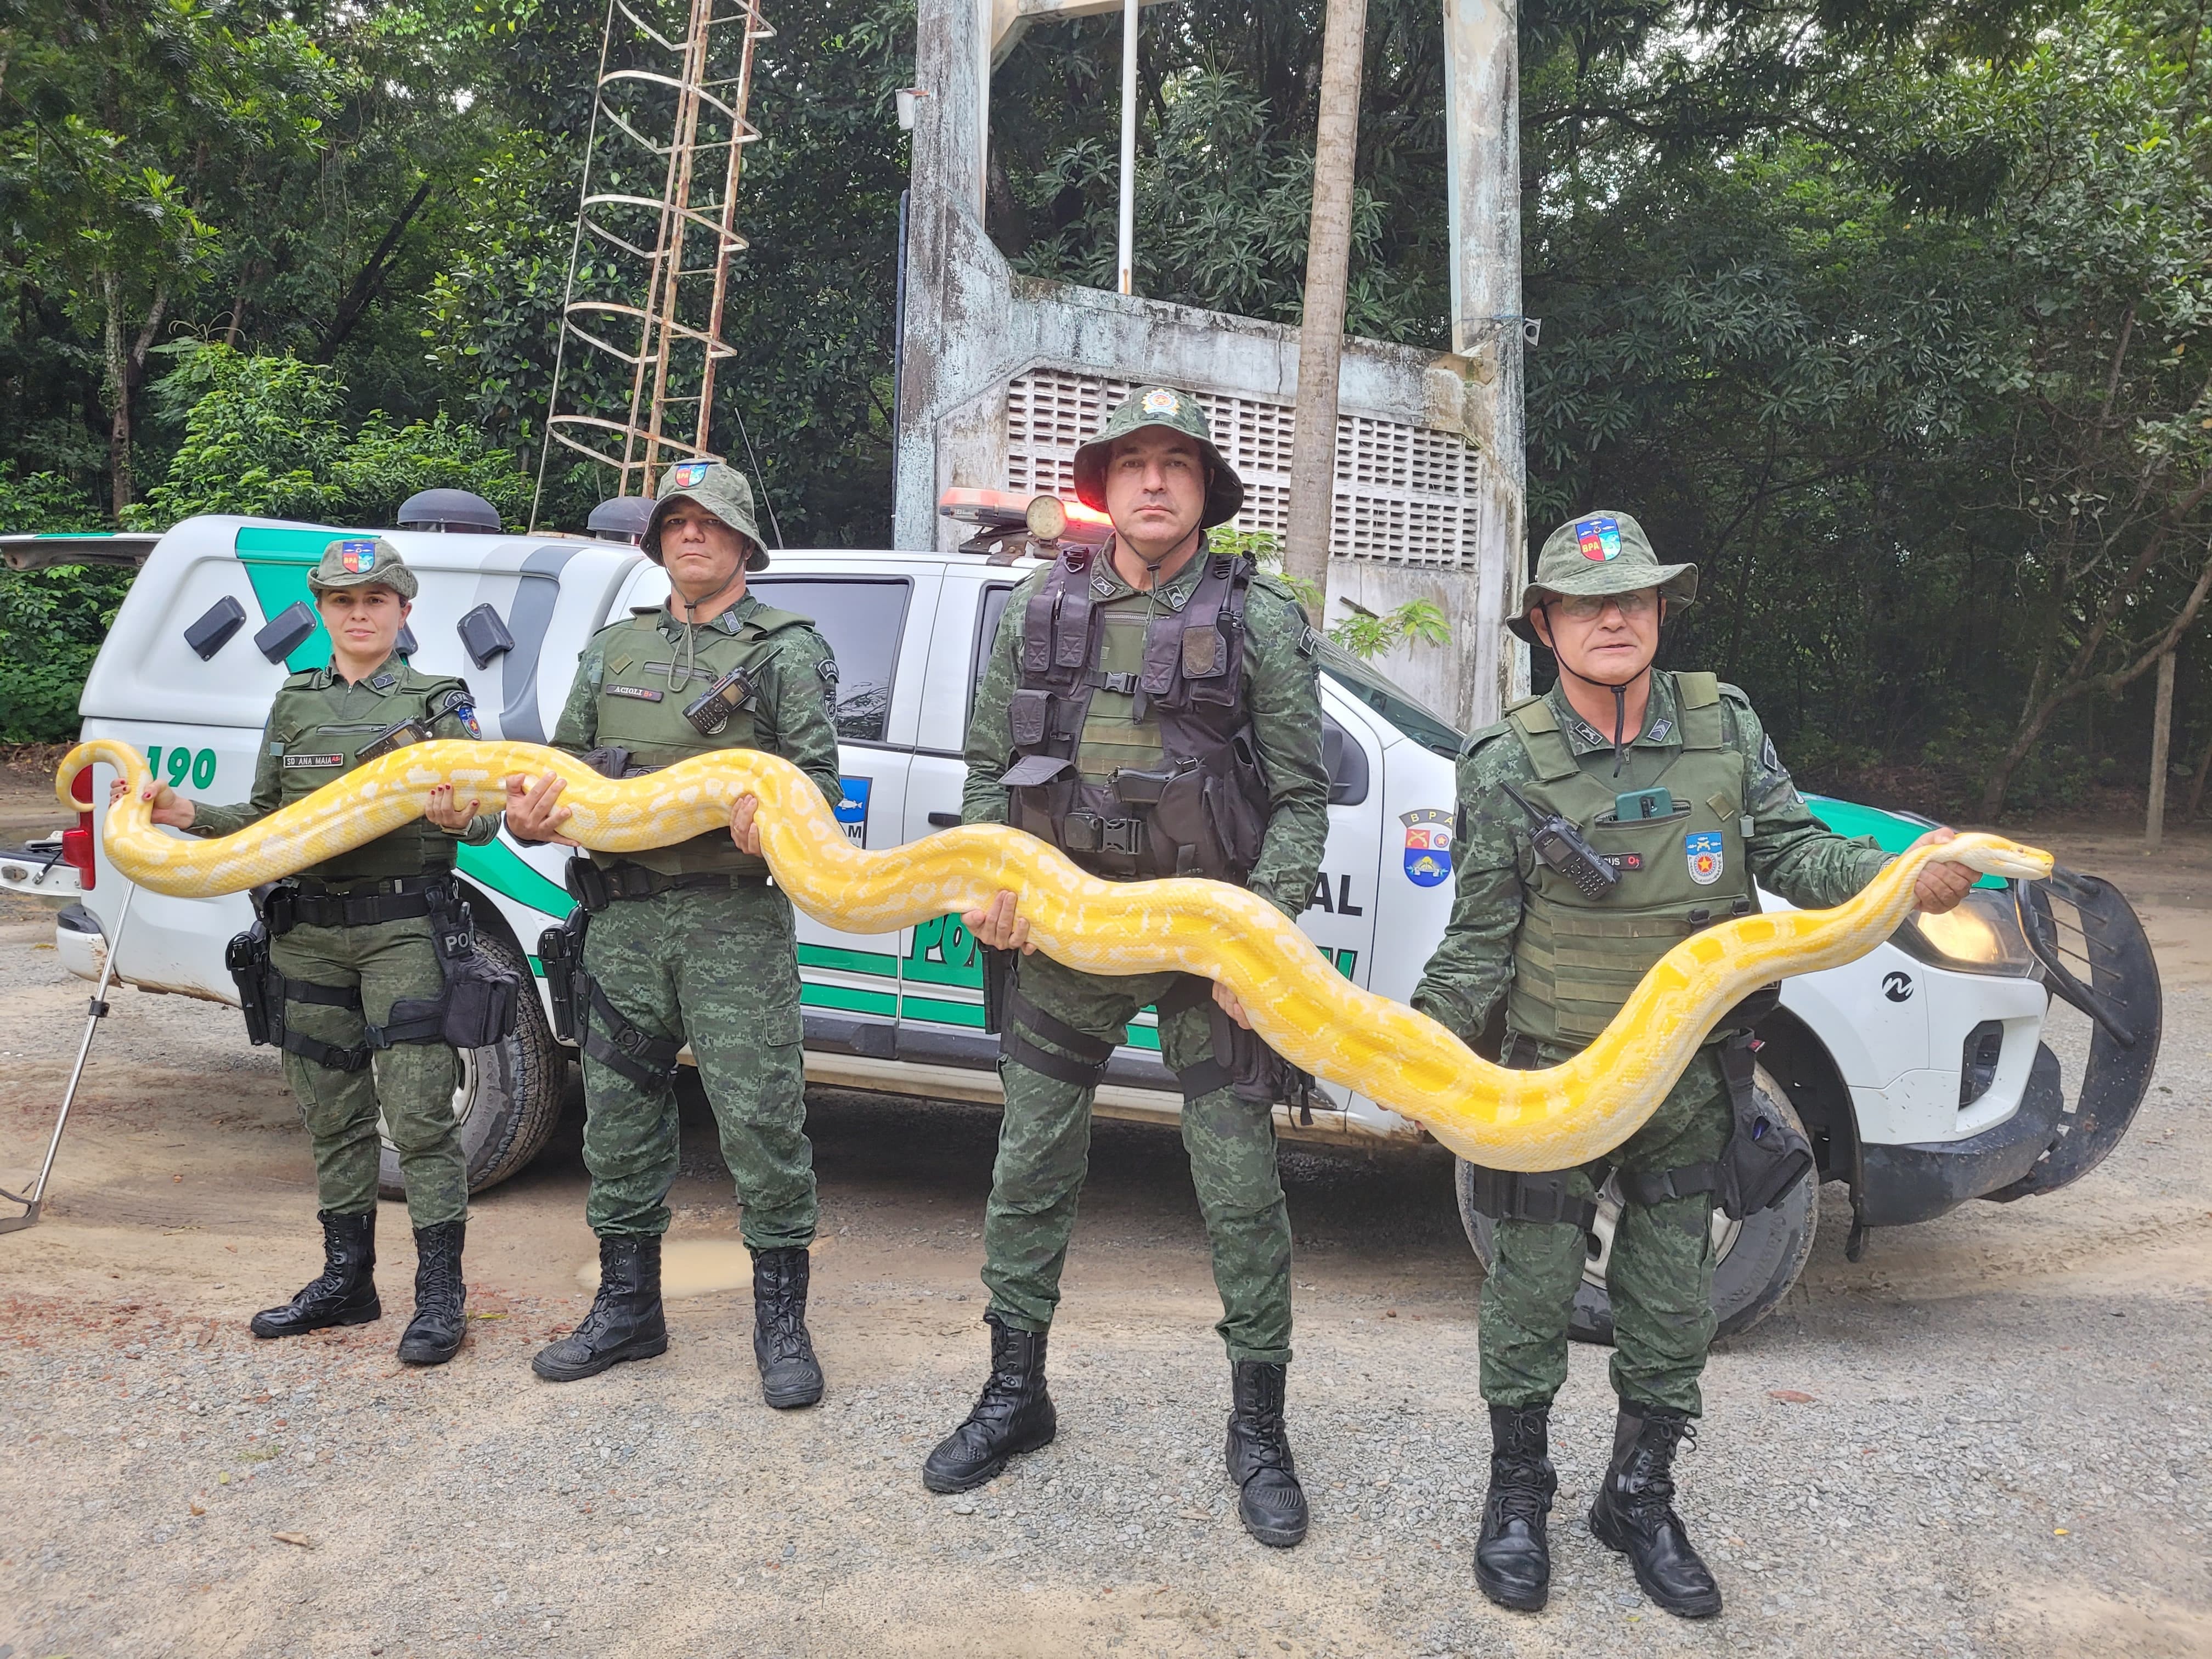 Cobra píton resgatada em chácara onde houve chacina em Arapiraca é espécie exótica da Ásia